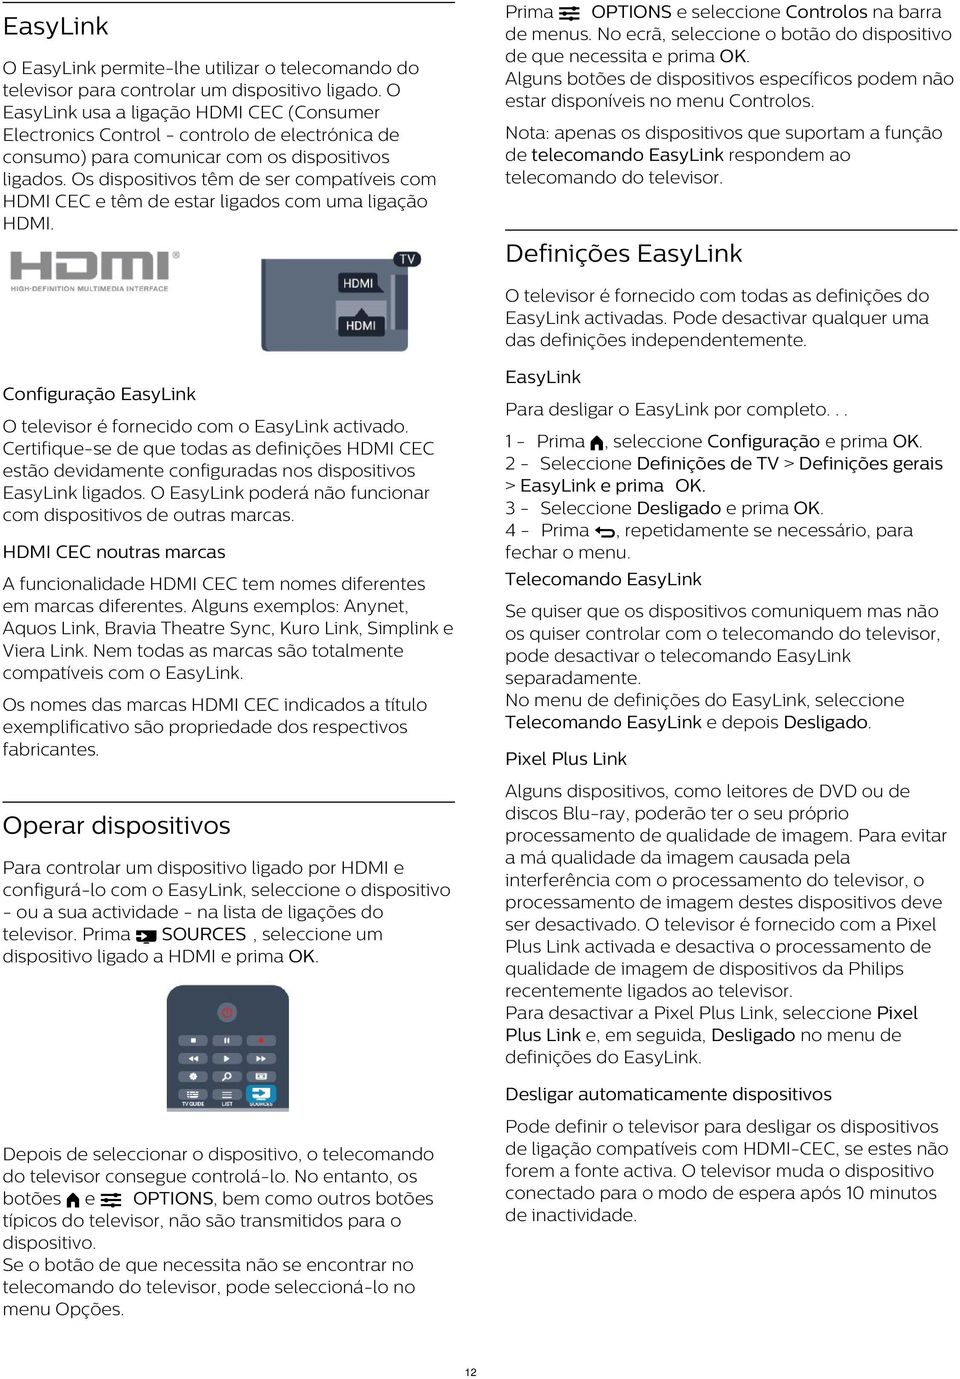 O EasyLink usa a ligação HDMI CEC (Consumer Electronics Control - controlo de electrónica de consumo) para comunicar com os dispositivos ligados.